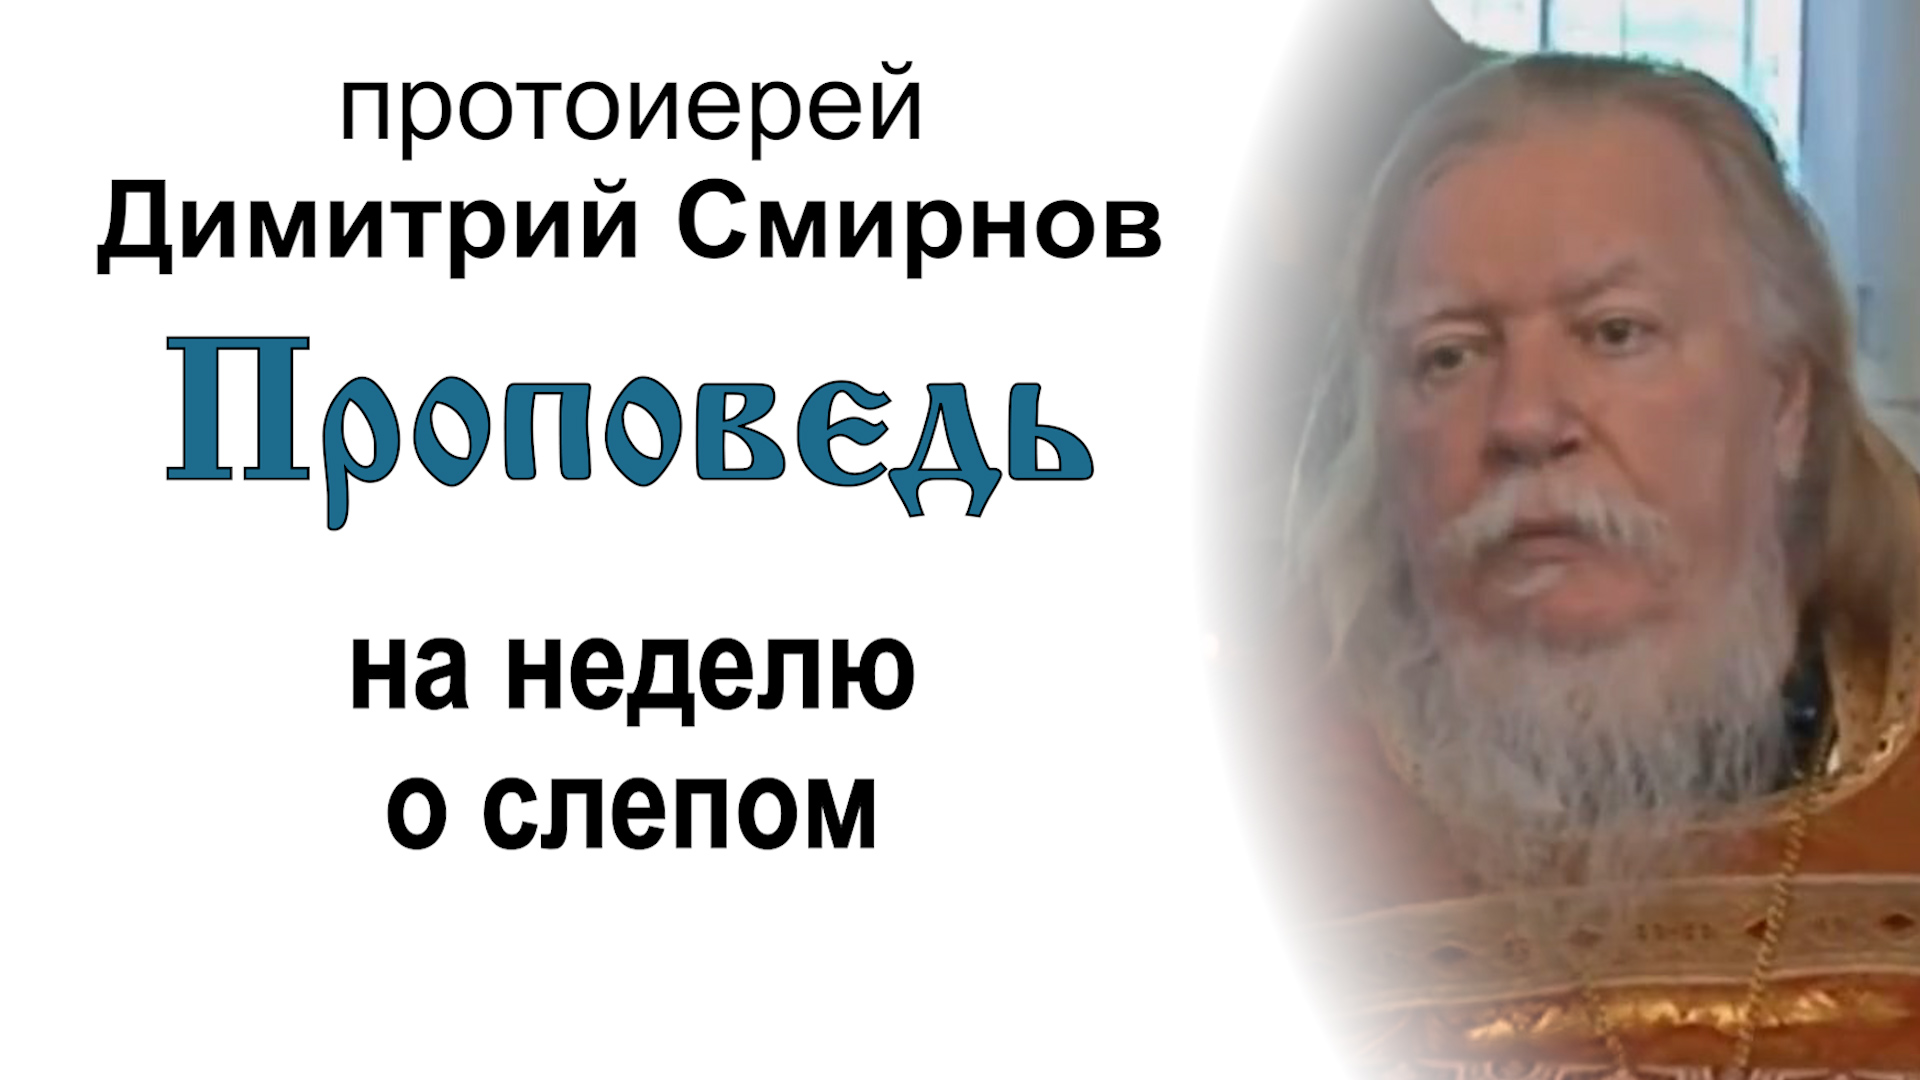 Проповедь на неделю о слепом (2011.05.29). Протоиерей Димитрий Смирнов